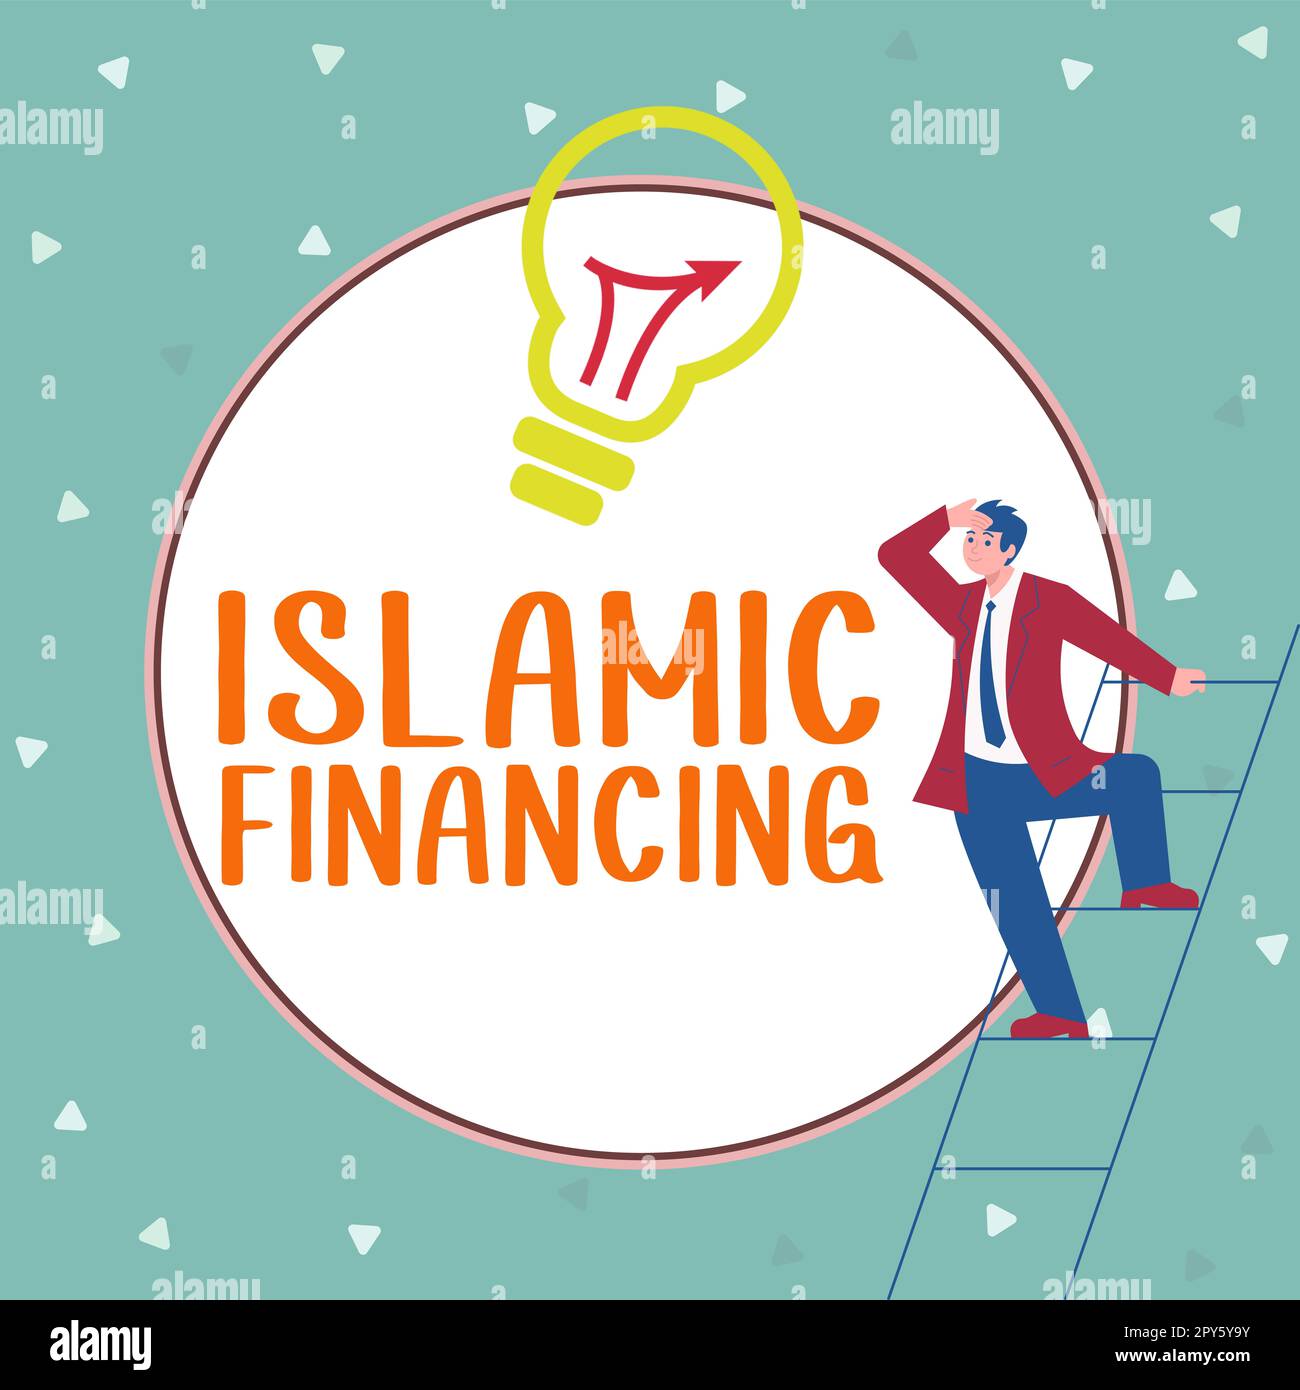 Handgeschriebenes Schild Islamische Finanzierung. Business präsentiert Bankaktivitäten und Investitionen, die der Scharia entsprechen Stockfoto